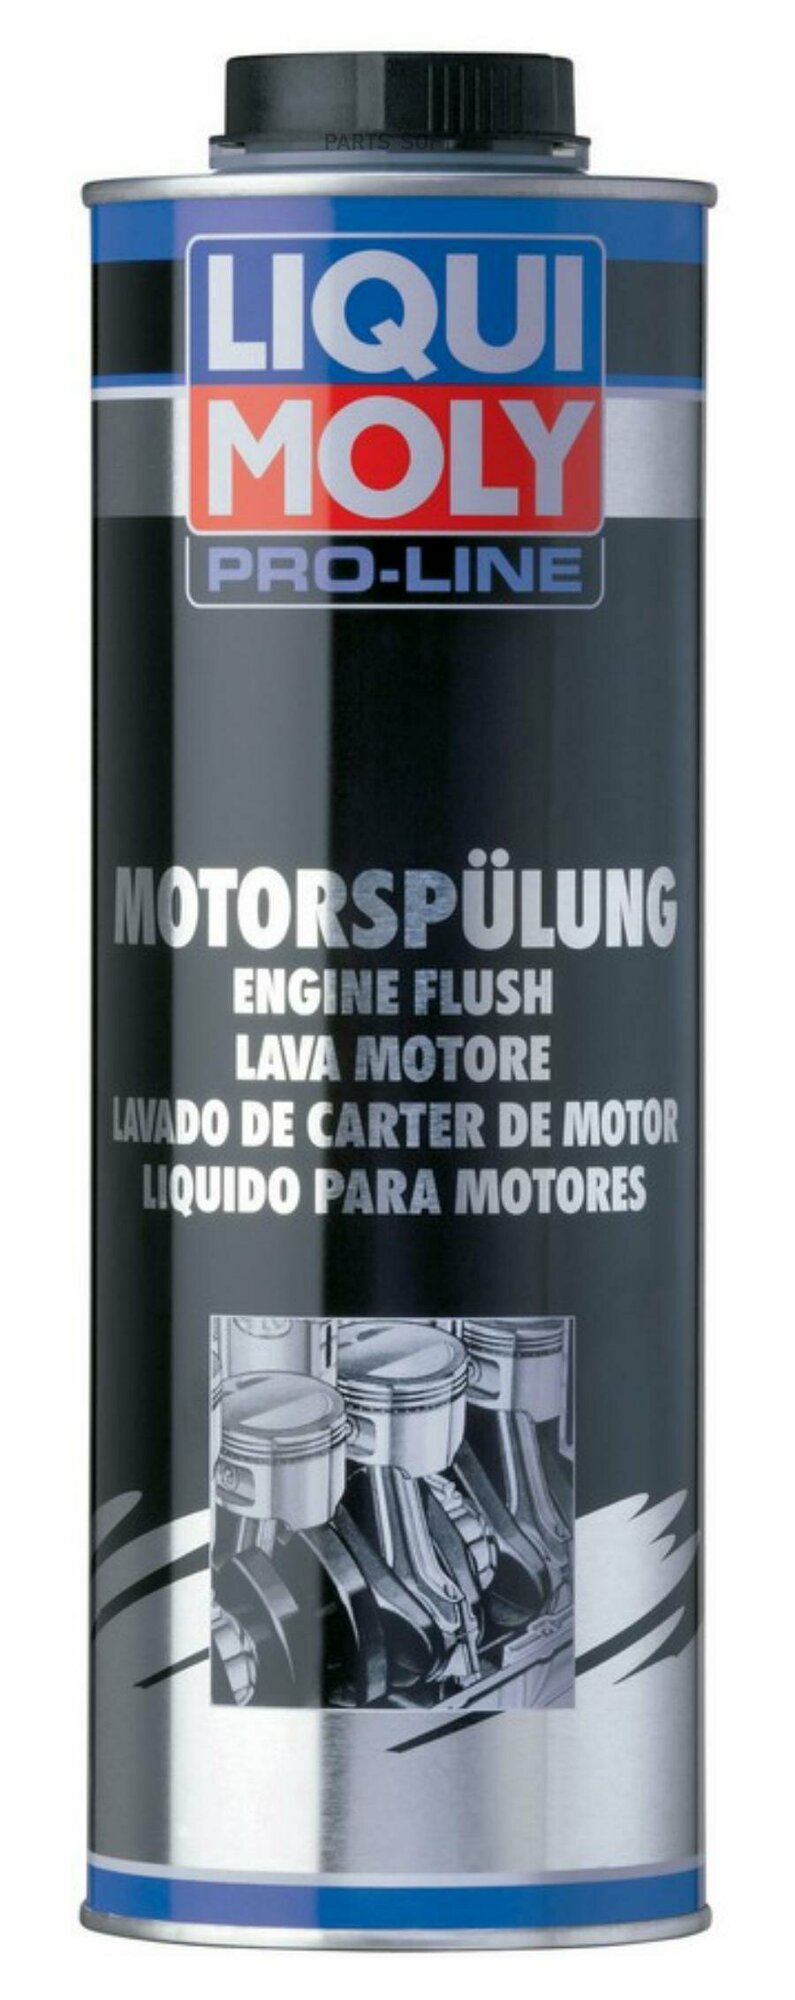 Промывка двигателя 10-минутная промывка двигателя Pro-Line Motorspulung, 1 л LIQUI MOLY 2425 | цена за 1 шт